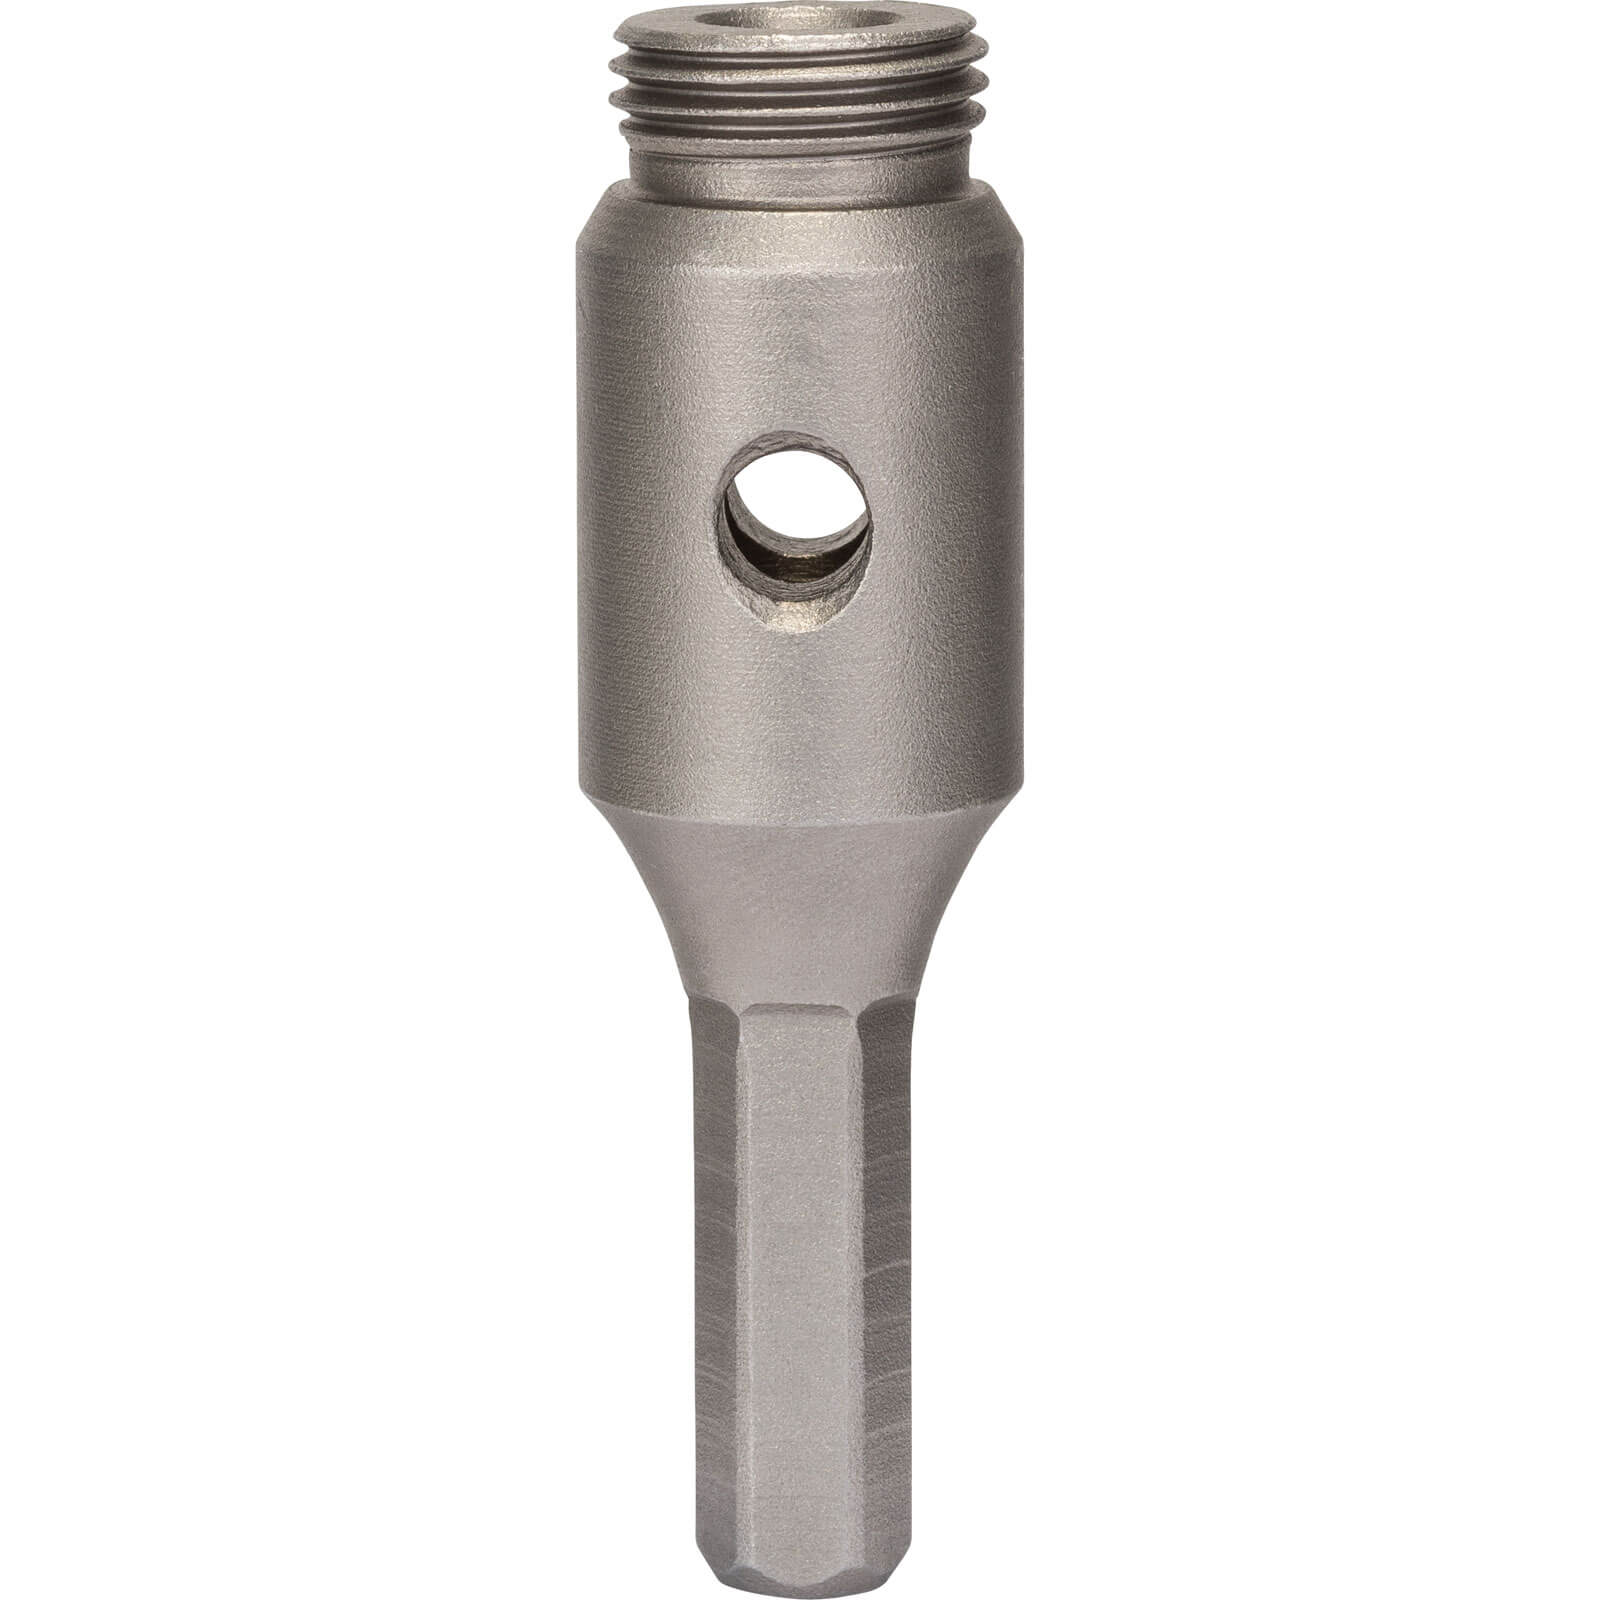 Image of Bosch Diamond Core Adaptor For Drill Chucks